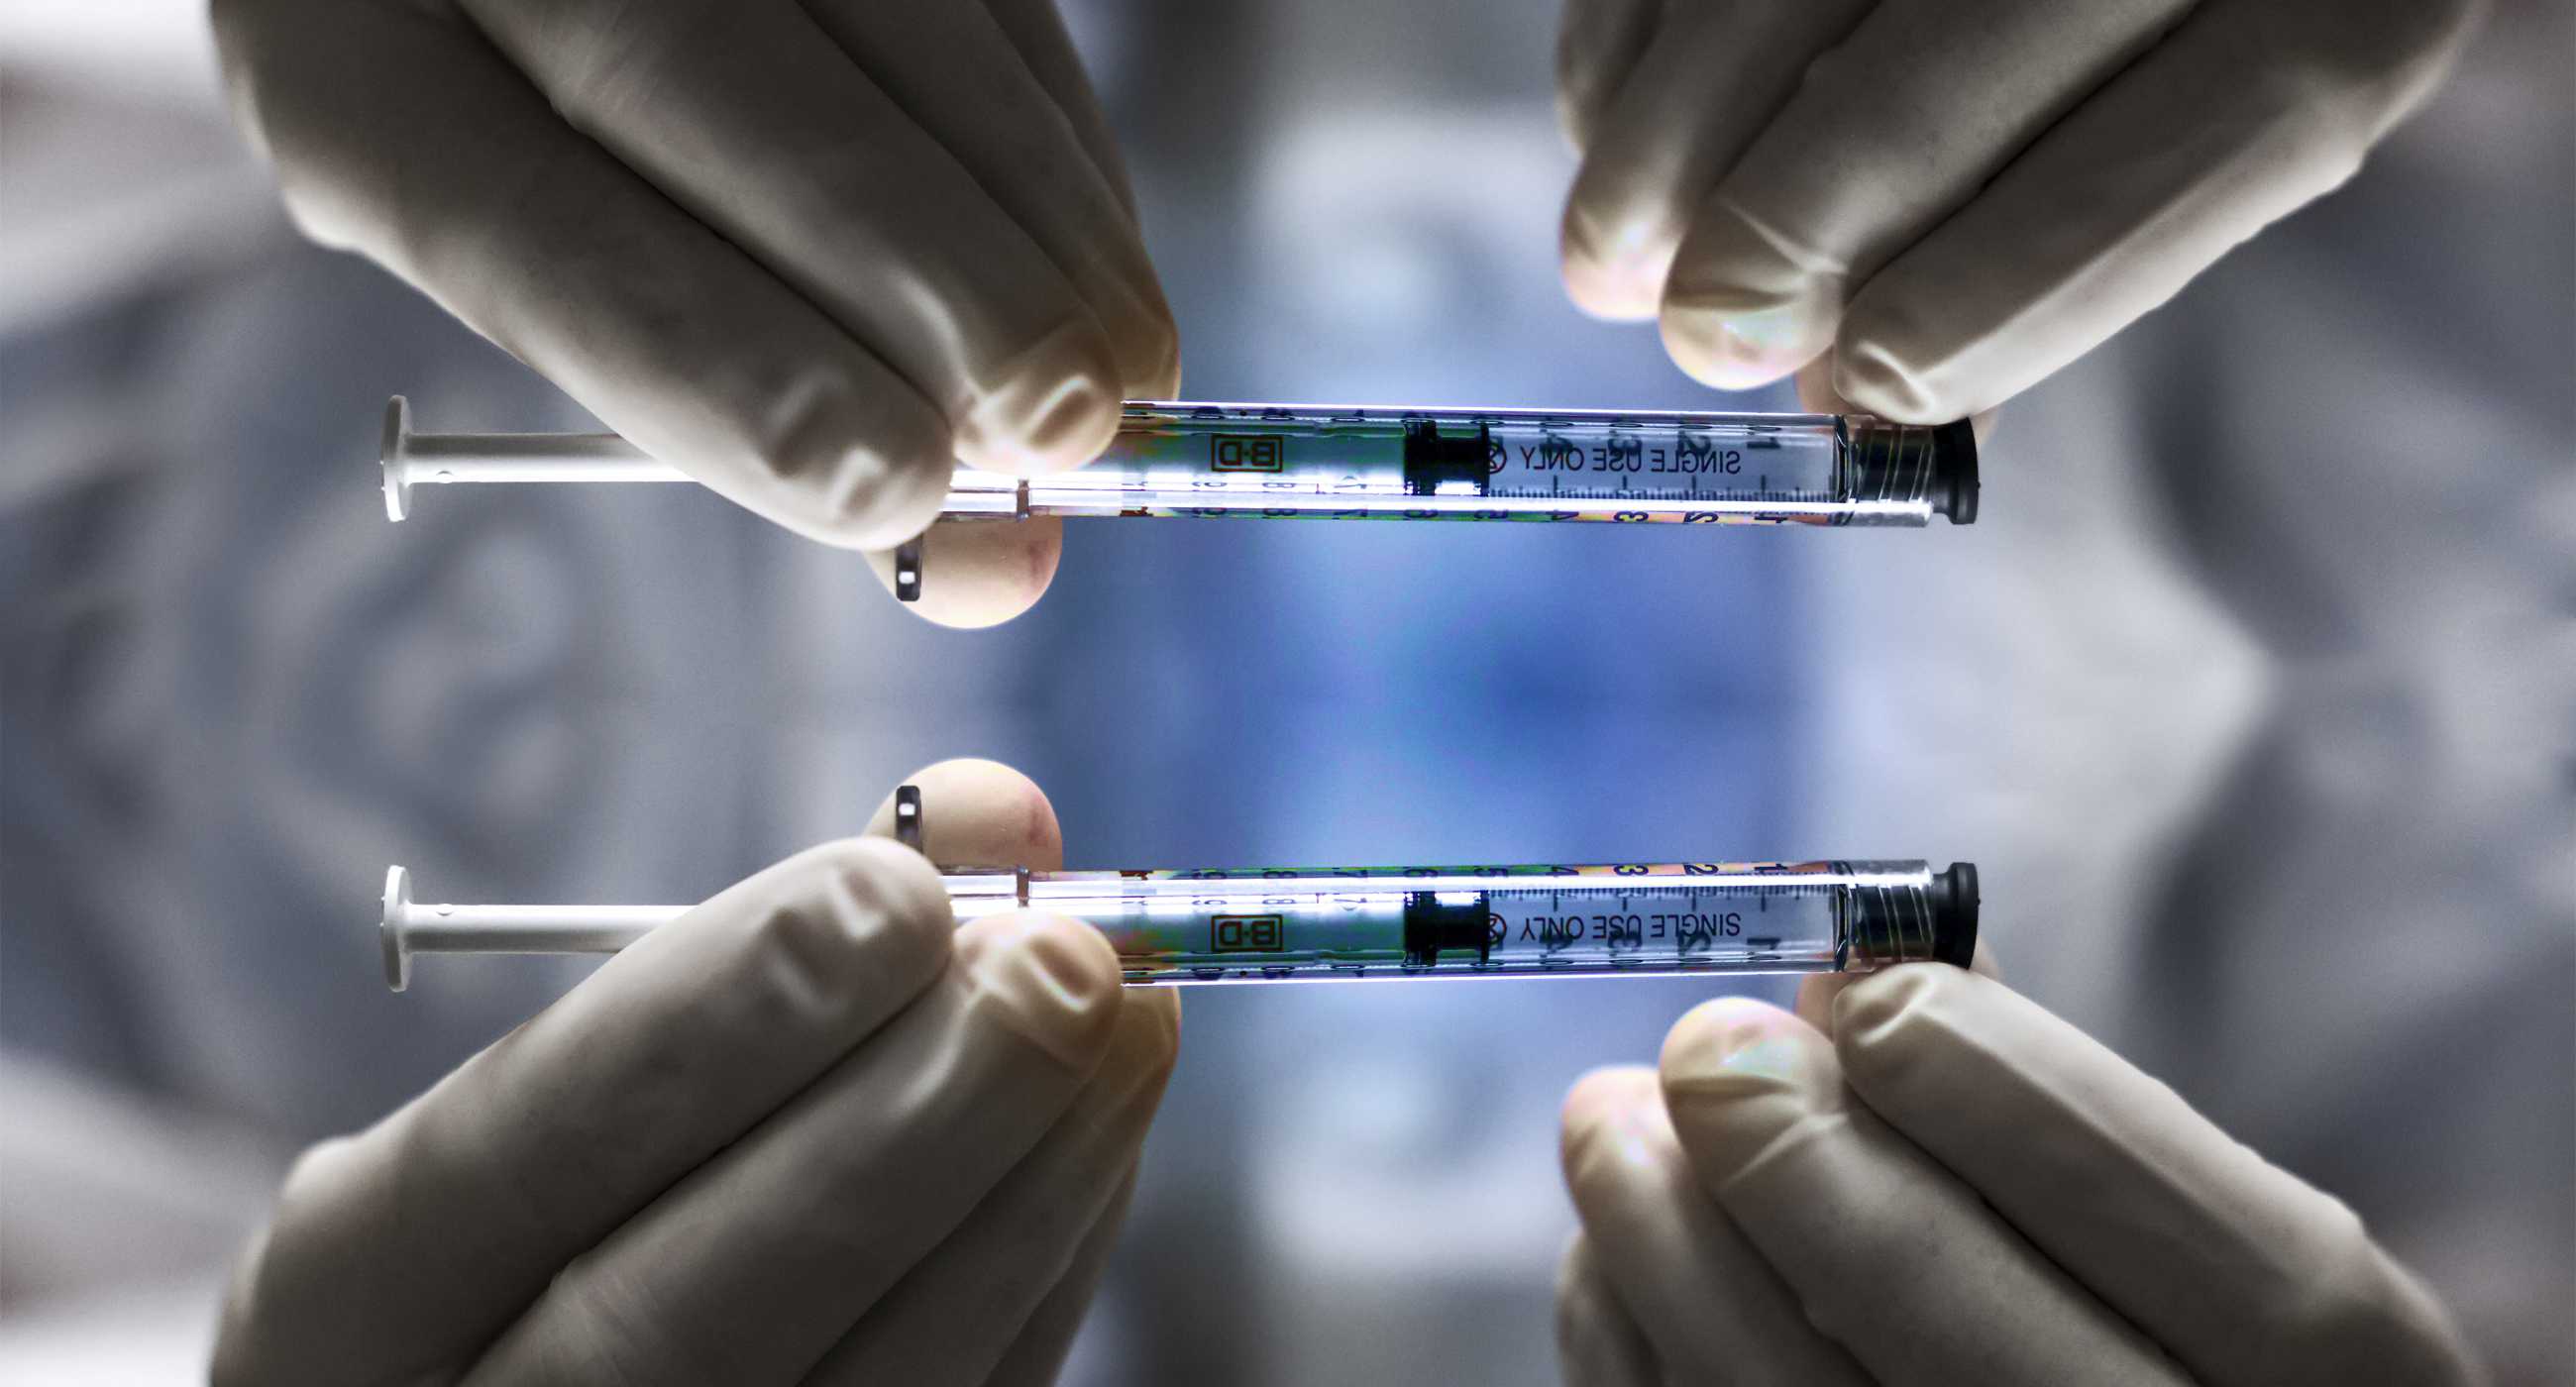 В Закарпатье уже смоделирована бустерная доза вакцины. Об этом сообщила региональный координатор вакцинной кампании против COVID-19 в регионе Виктория Тымчик.